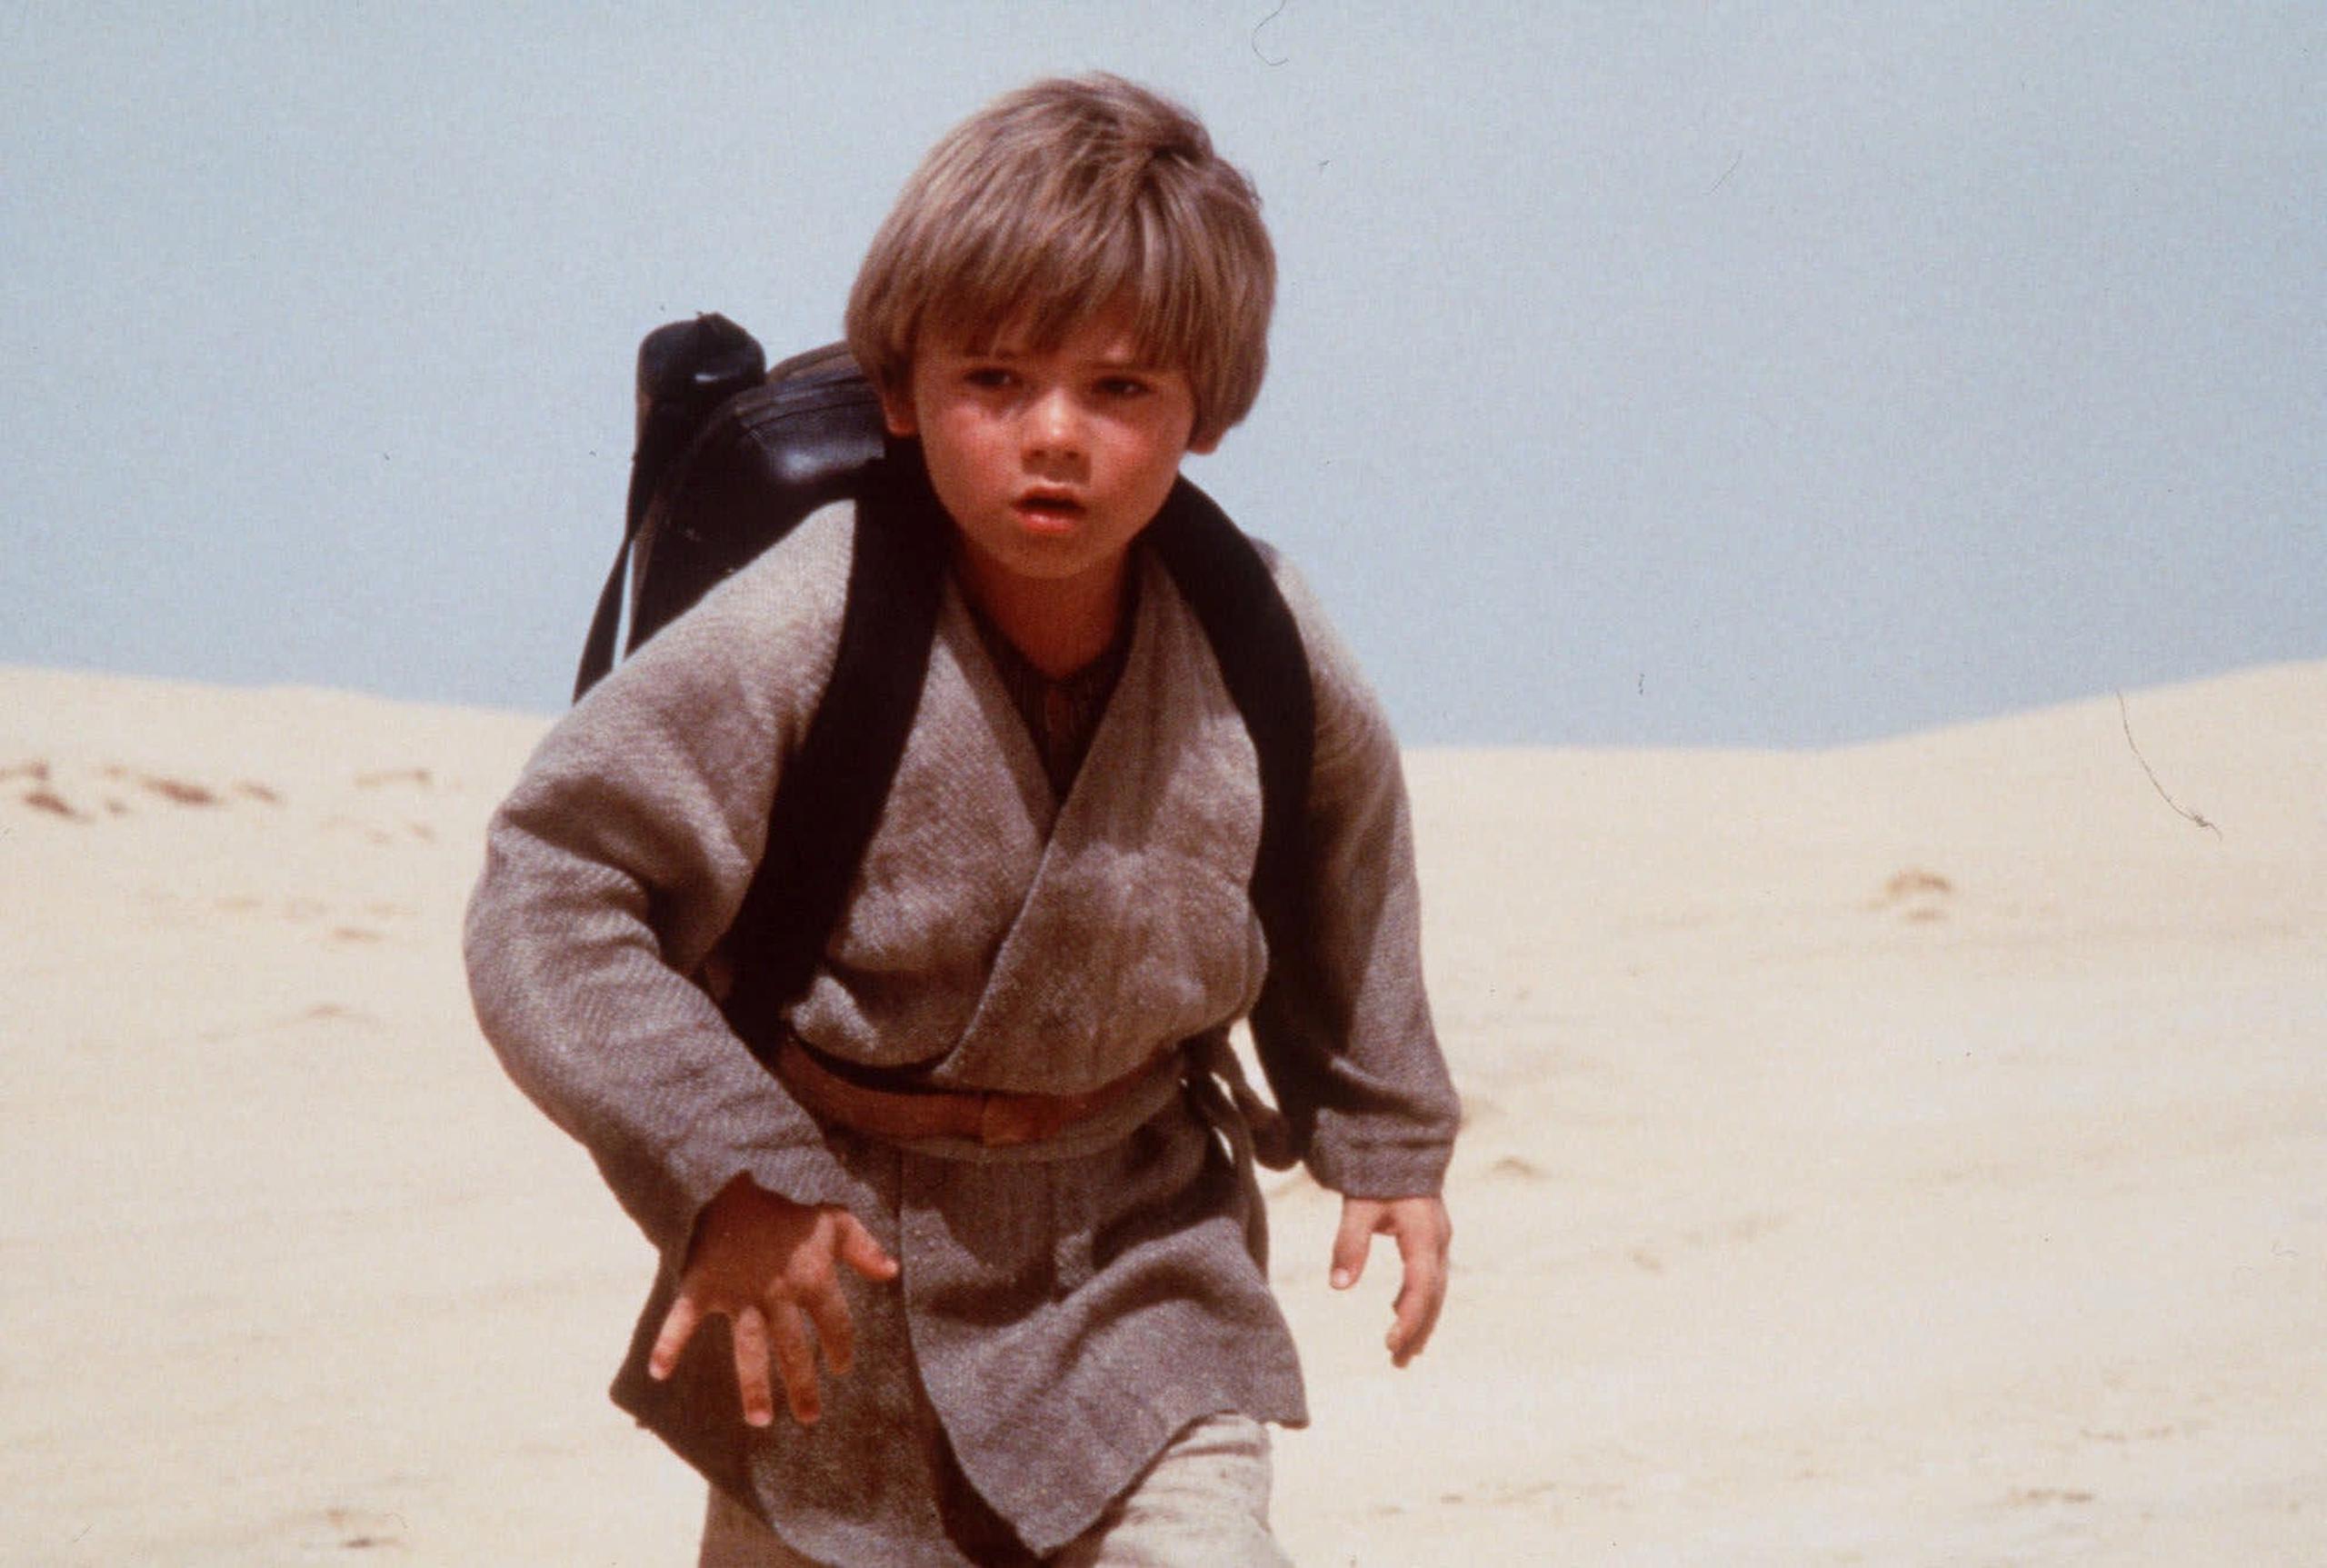 La historia de Anakin Skywalker comienza con "Star Wars: Episode 1 - The Phantom Menace", que llega nuevamente a la gran pantalla.  